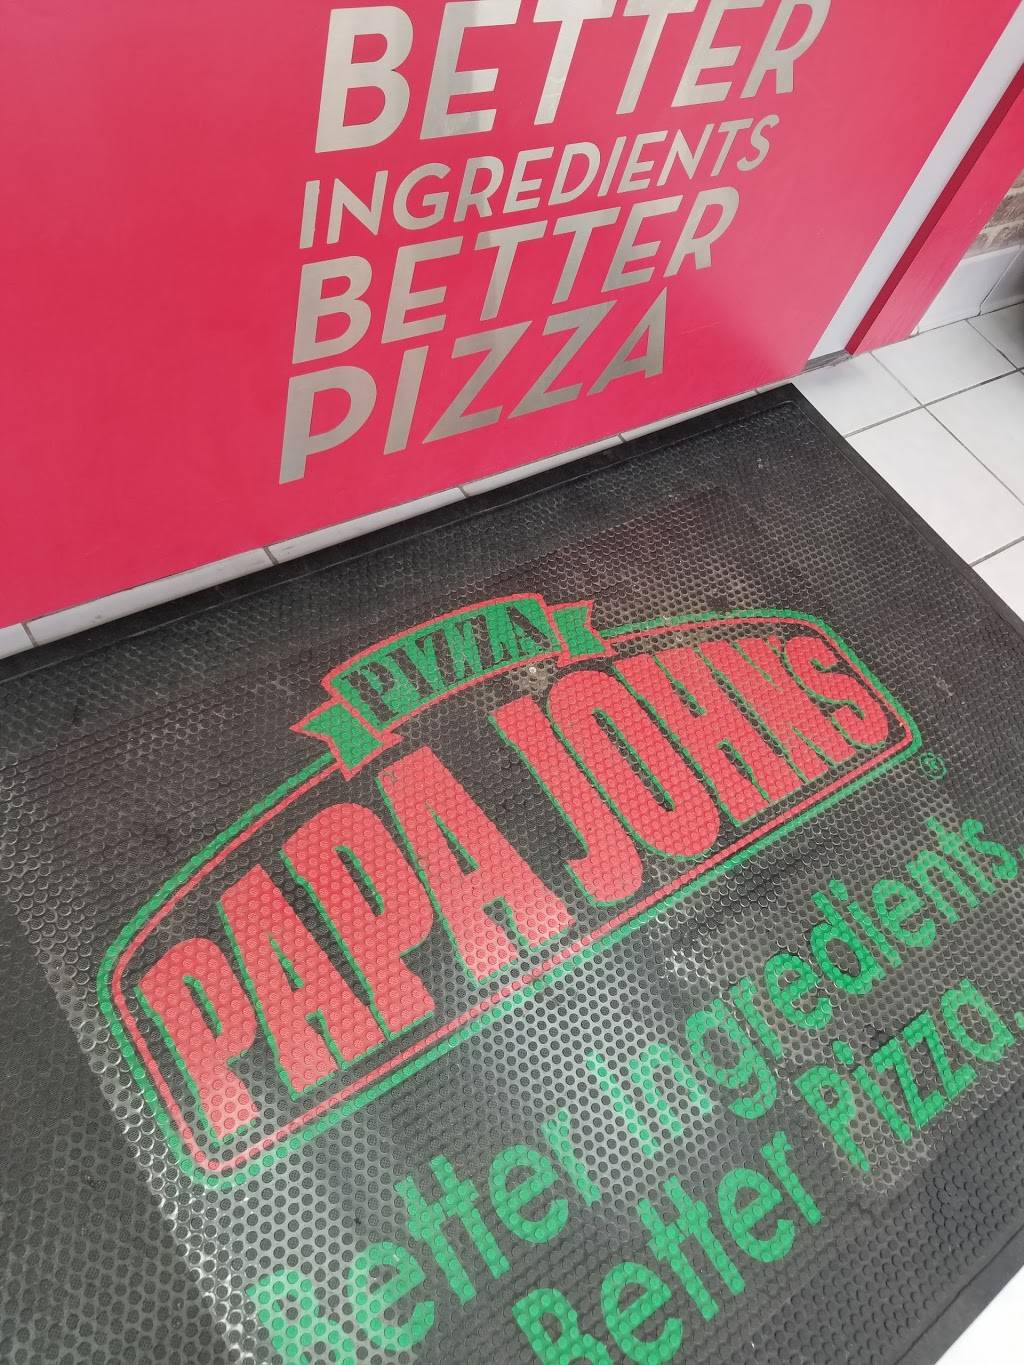 Papa Johns Pizza | restaurant | 2119 1st Avenue, New York, NY 10029, USA | 2129967272 OR +1 212-996-7272